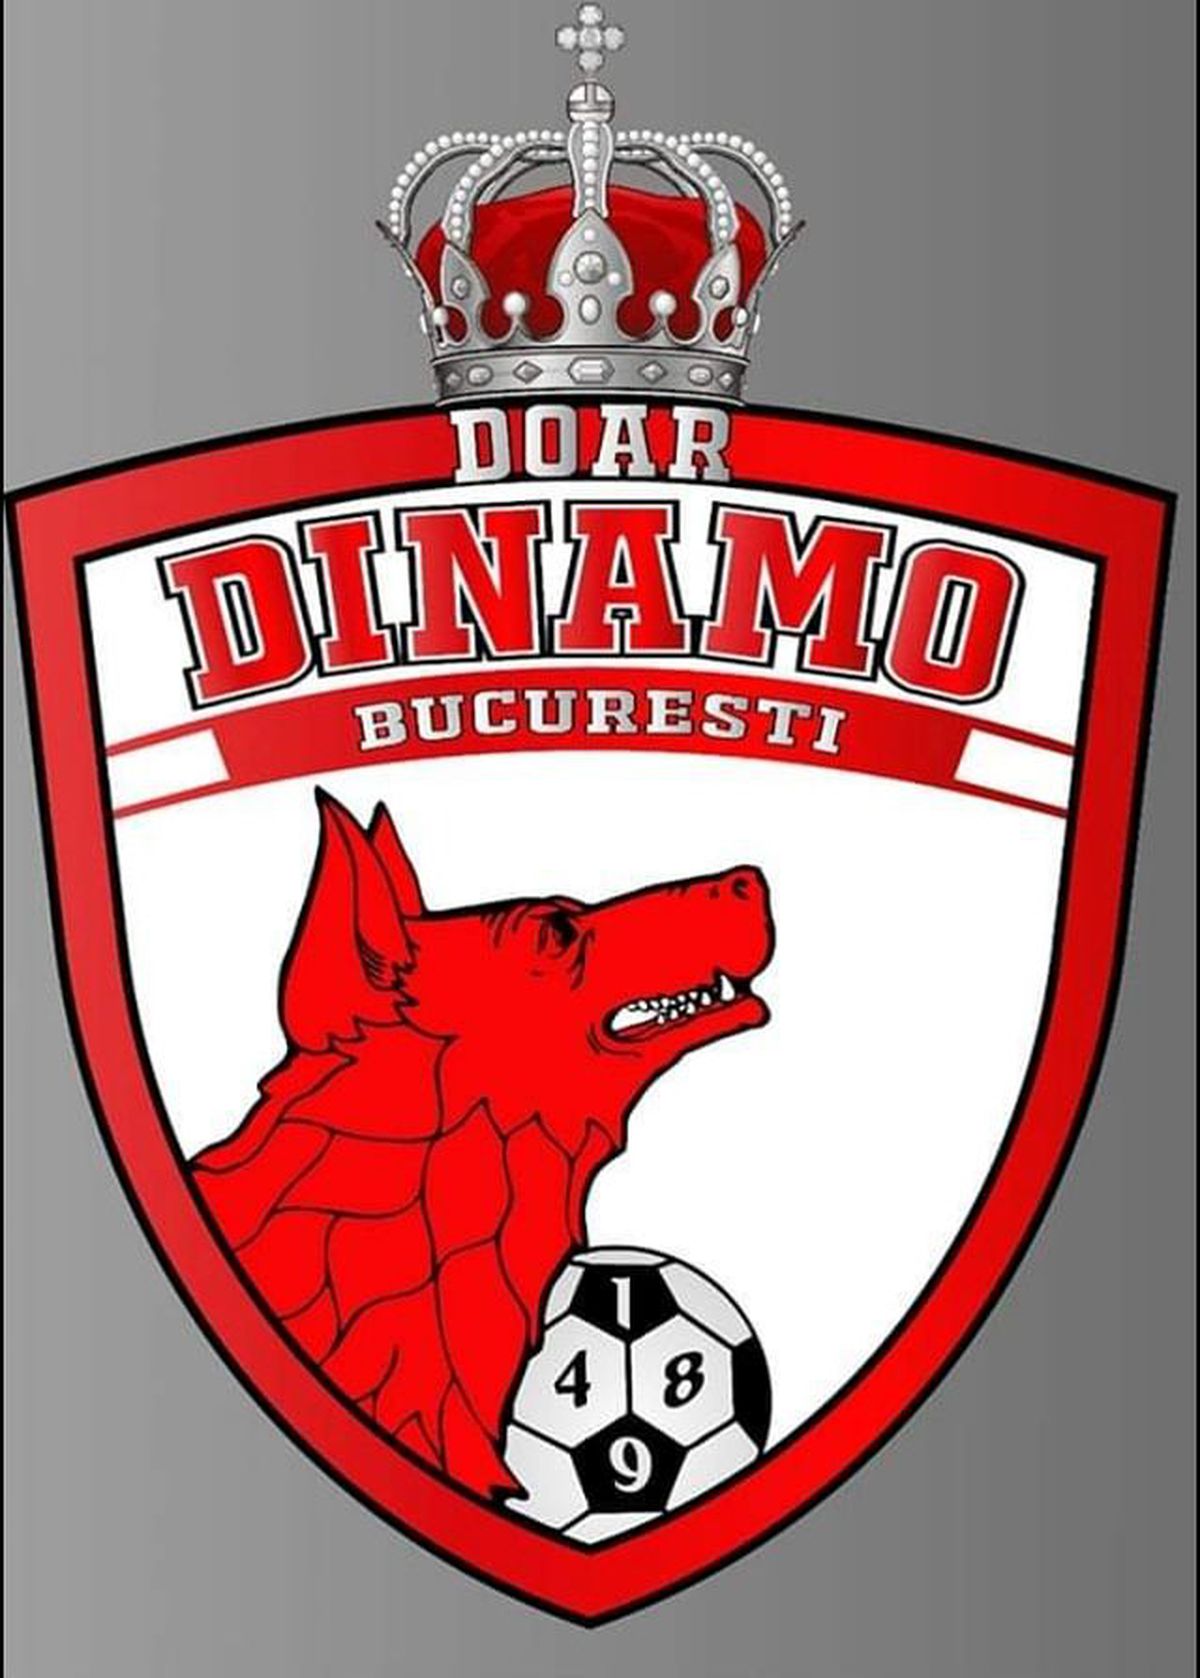 Primele propuneri pentru noua siglă a lui Dinamo